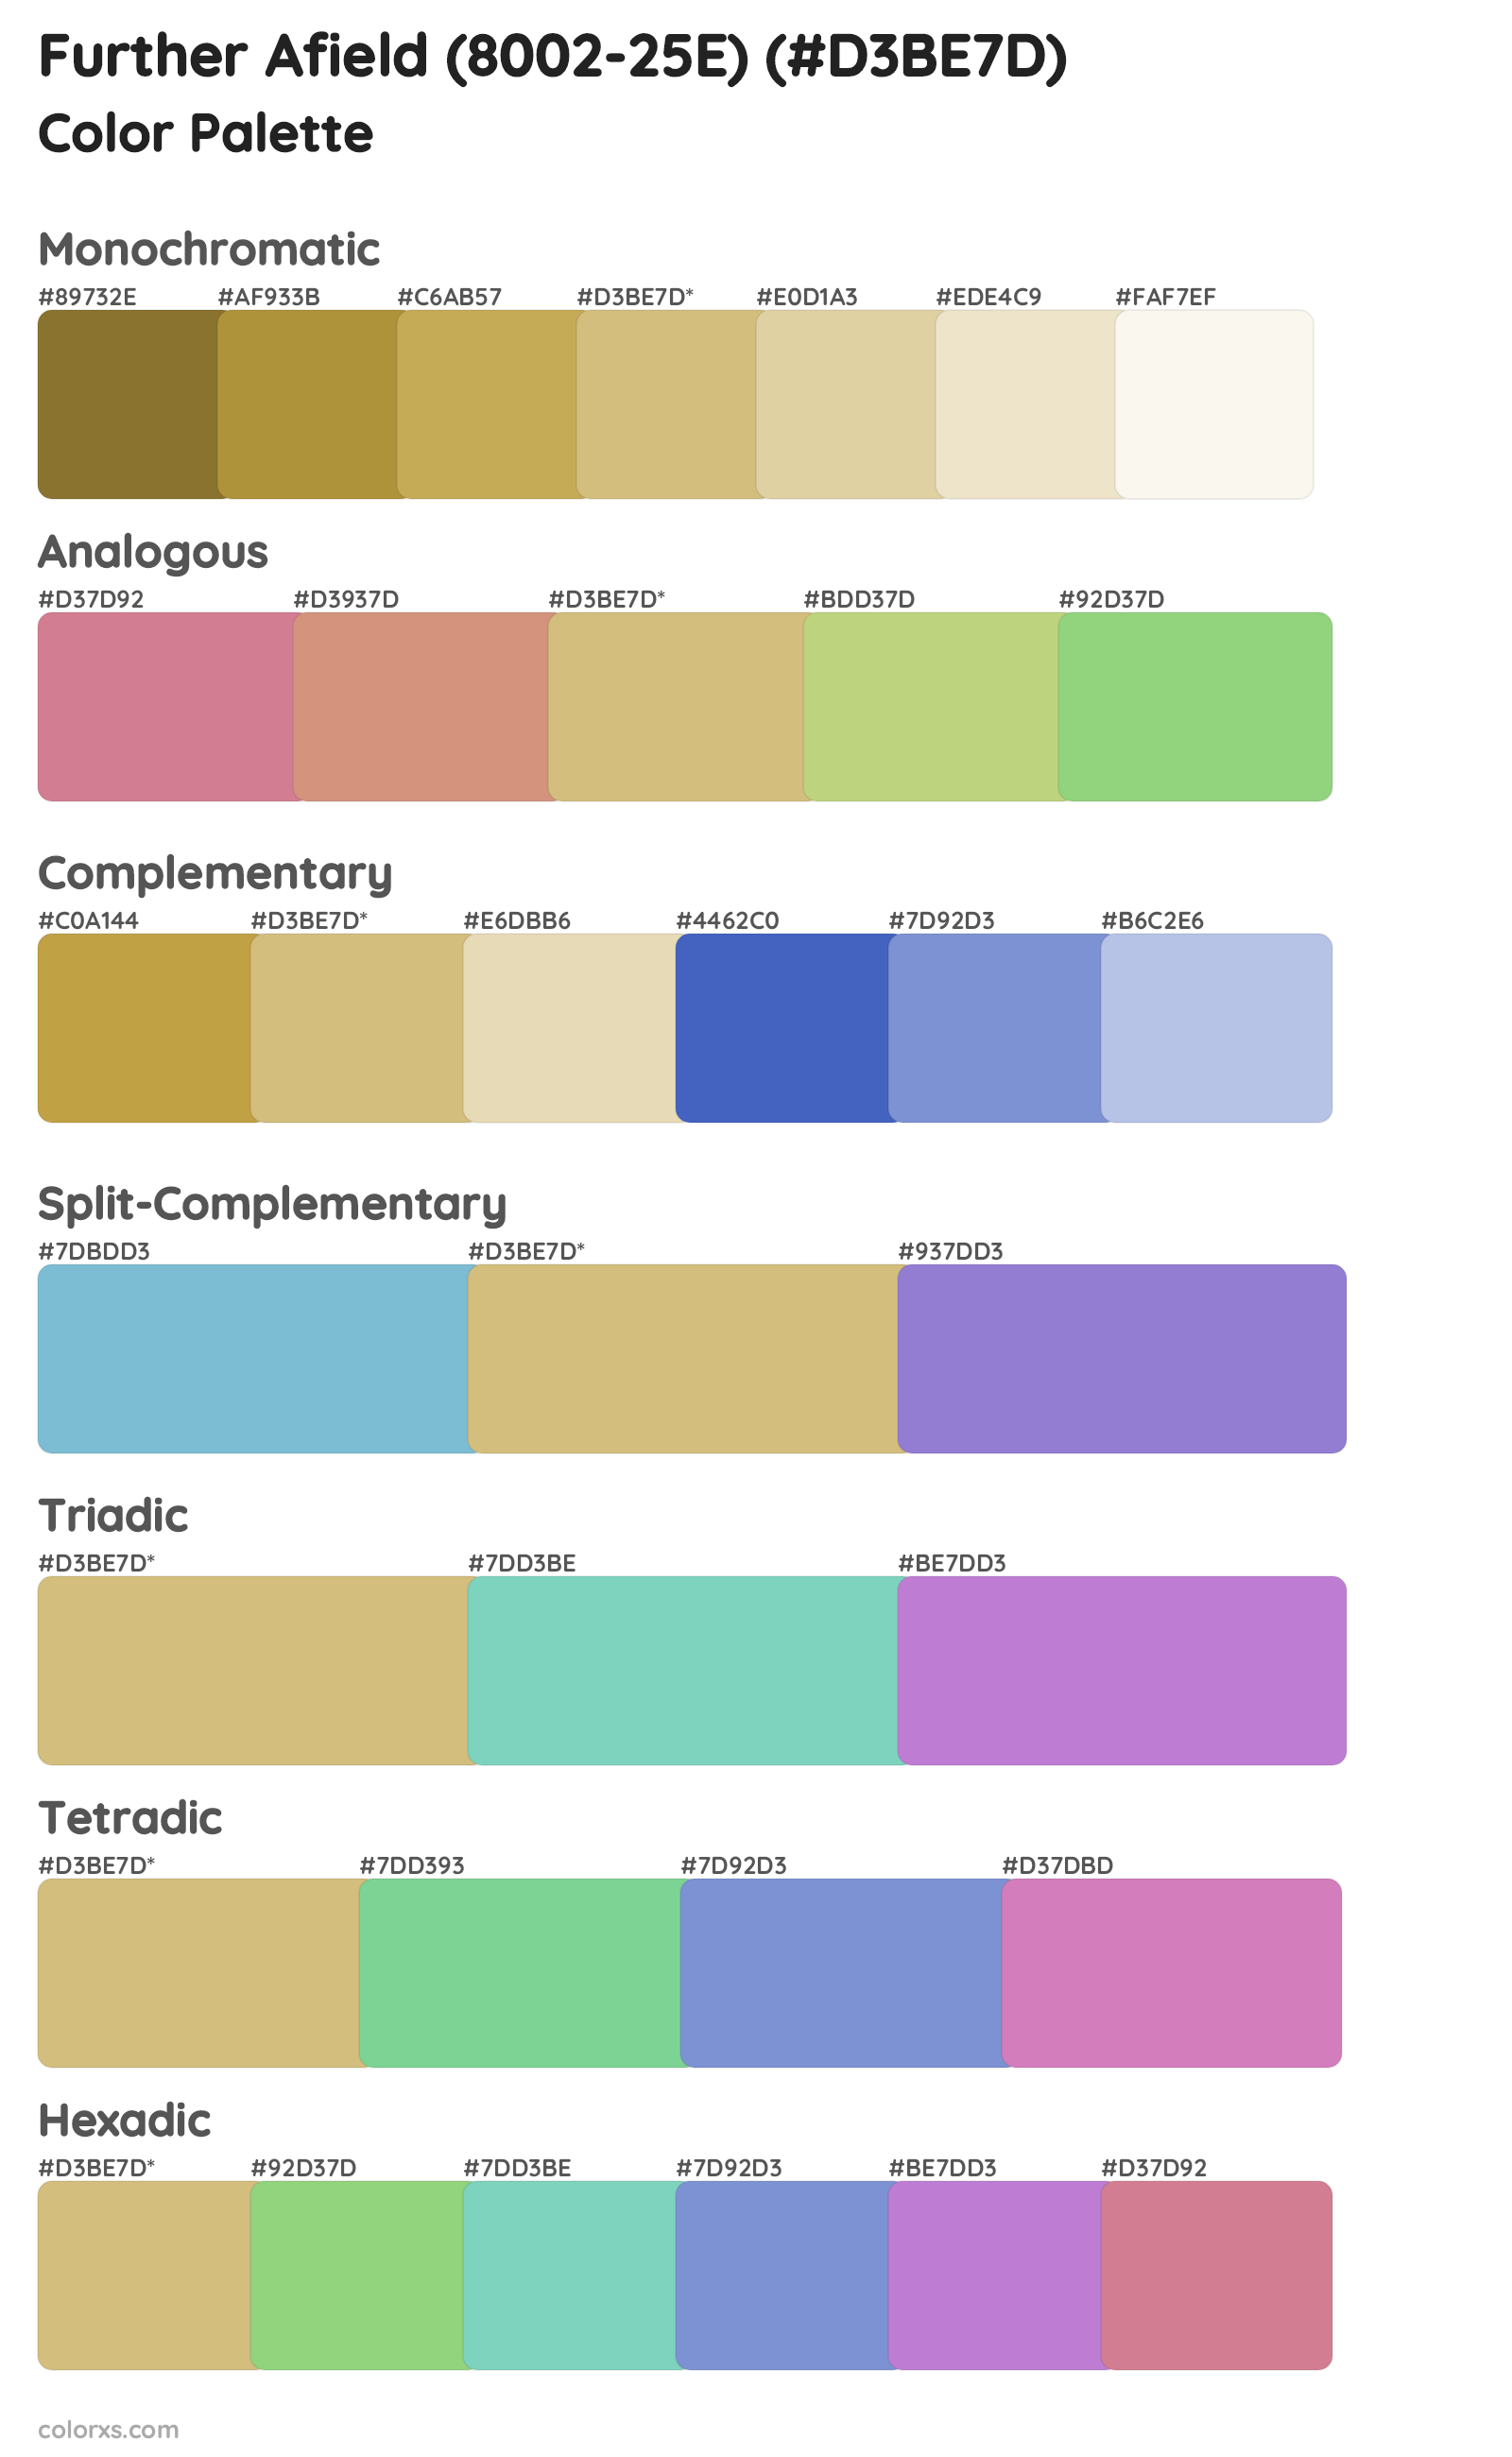 Further Afield (8002-25E) Color Scheme Palettes